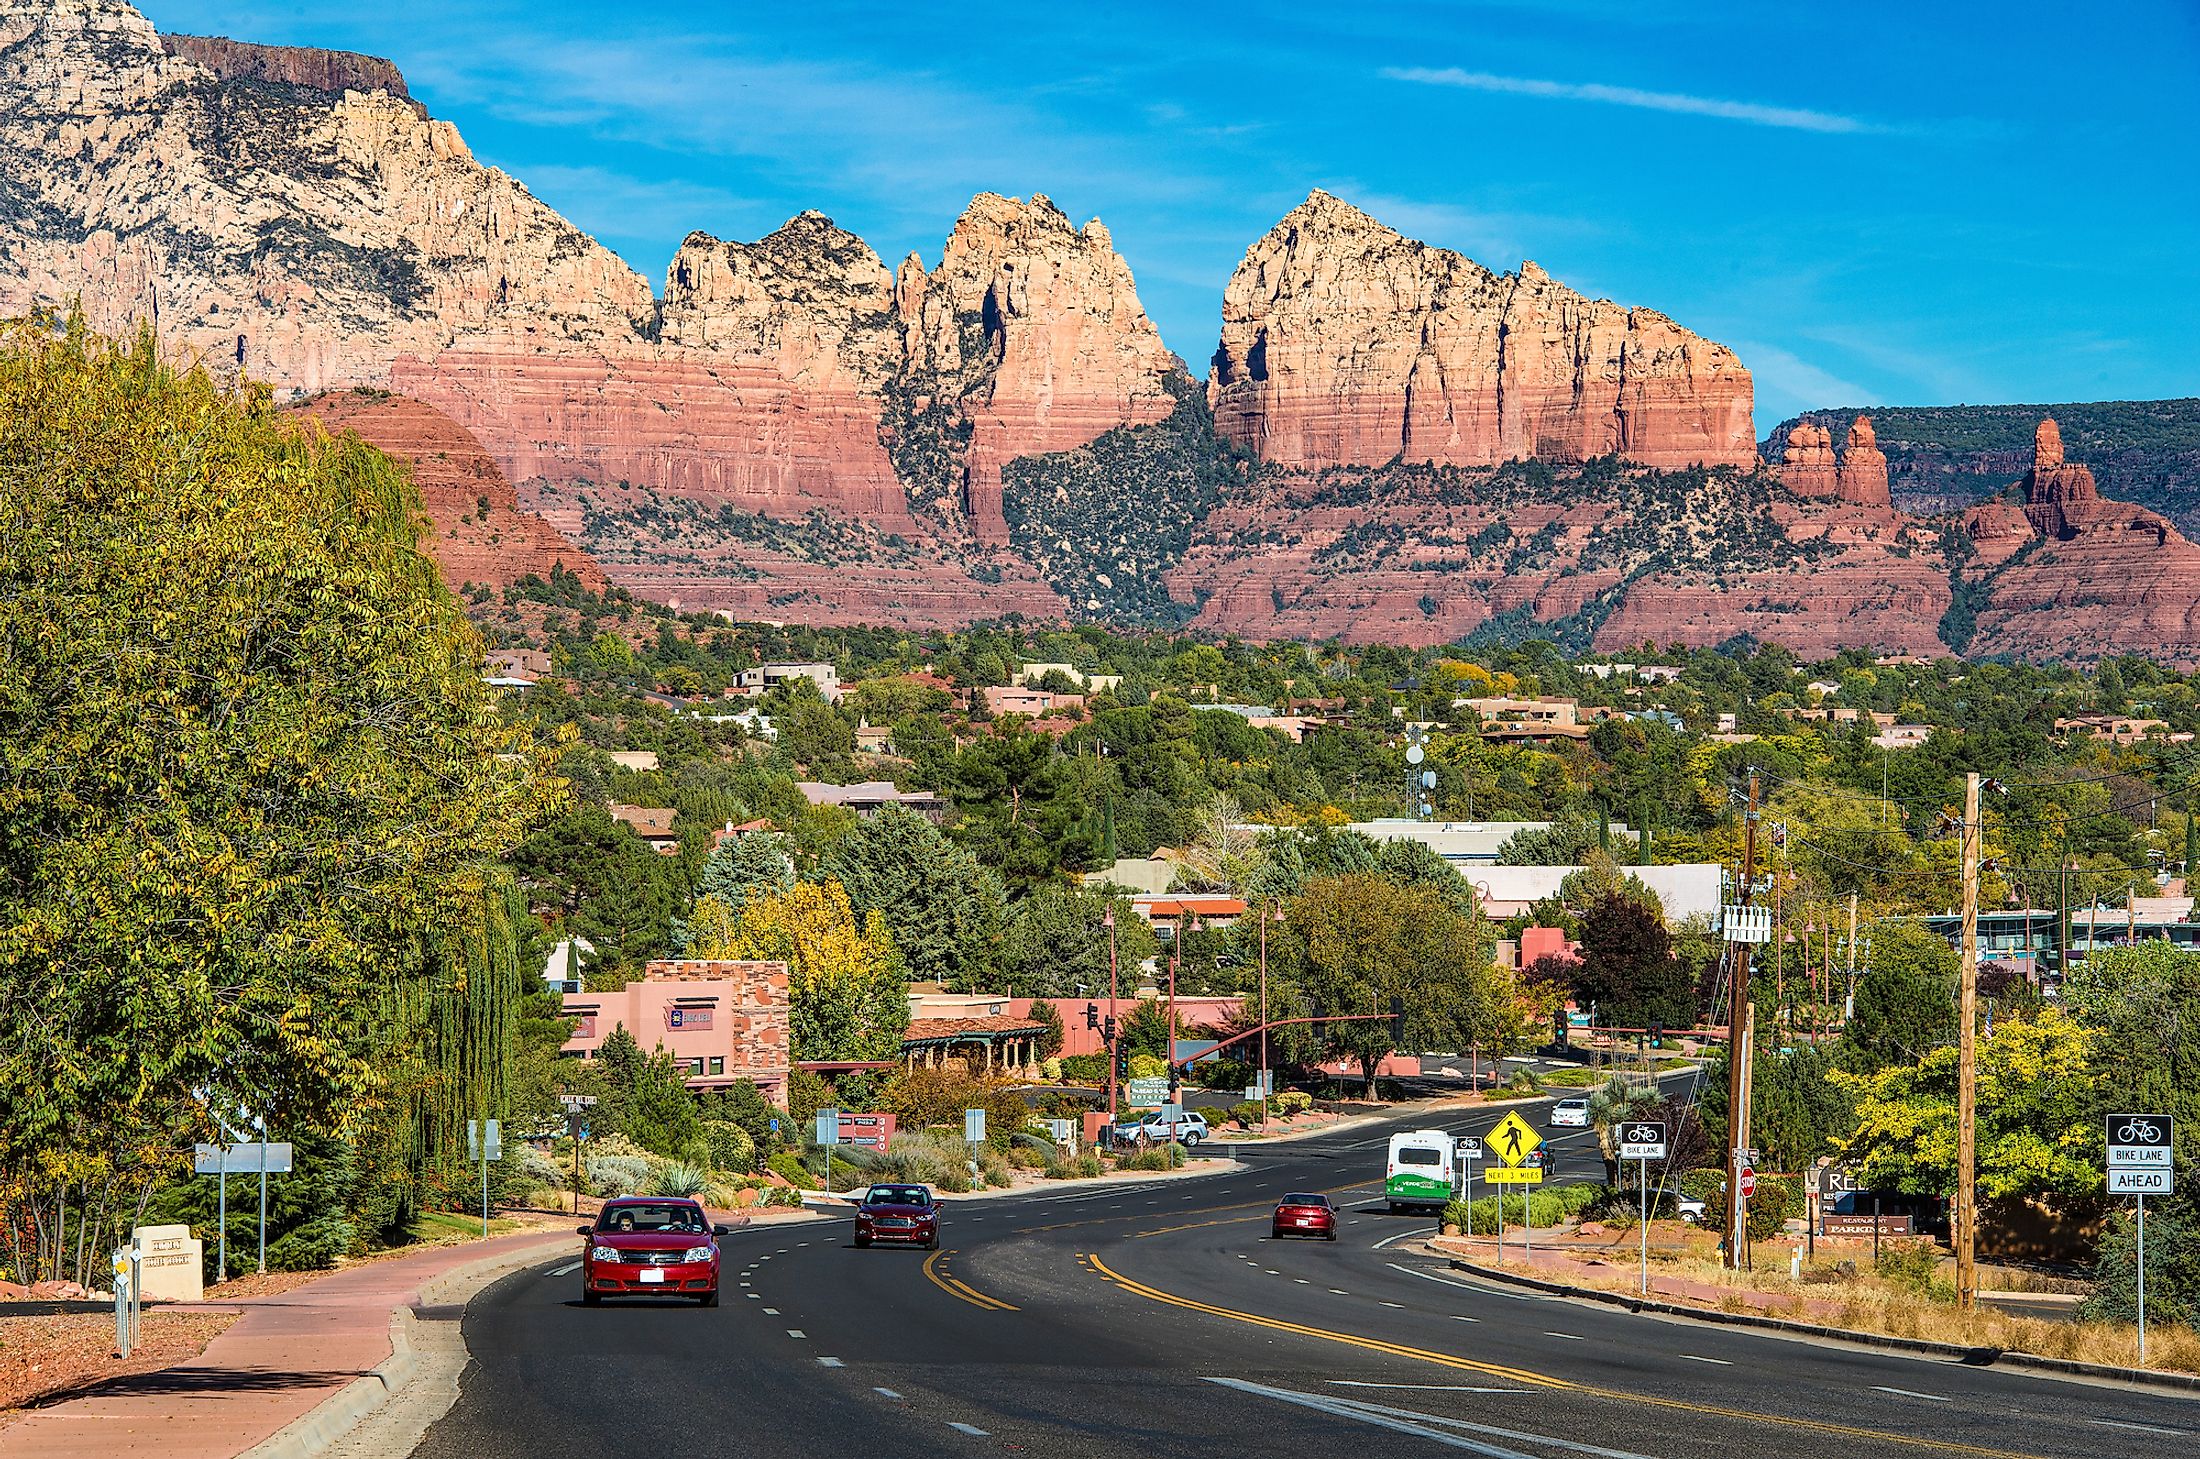 The beautiful town of Sedona in Arizona.